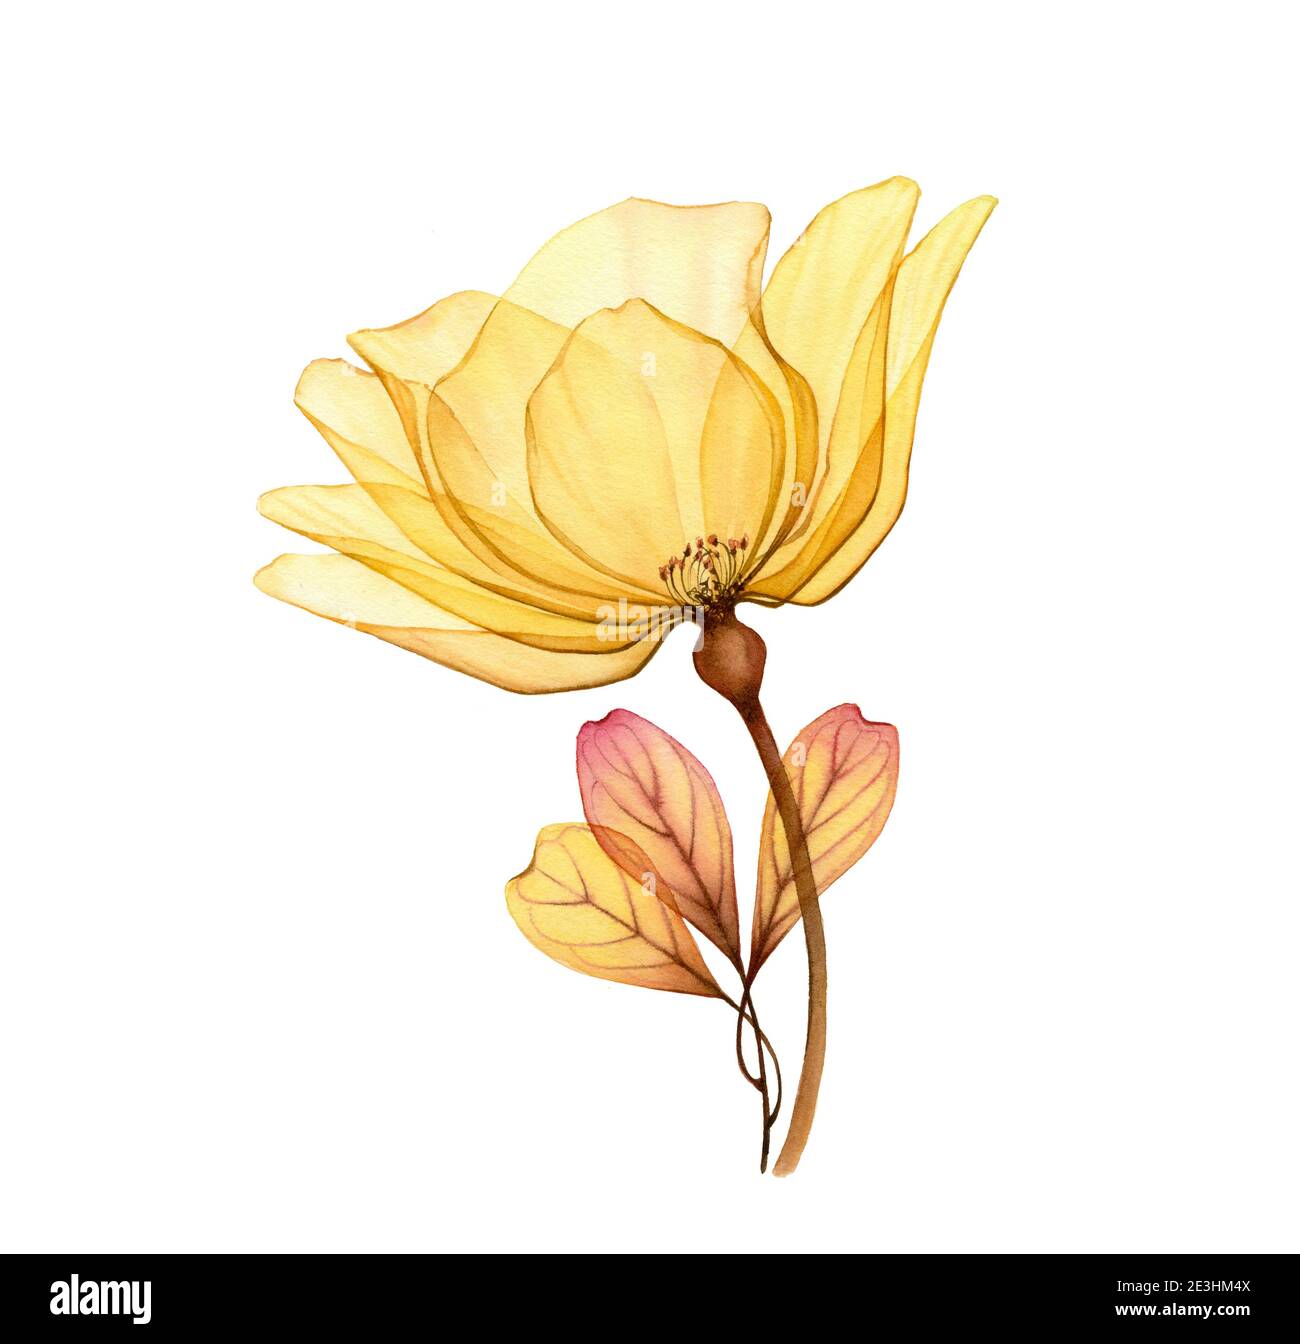 Aquarell gelbe Rose. Transparente große Blume isoliert auf weiß. Handbemaltes Kunstwerk mit detaillierten Blütenblättern. Botanische Illustration für Karten, Hochzeit Stockfoto